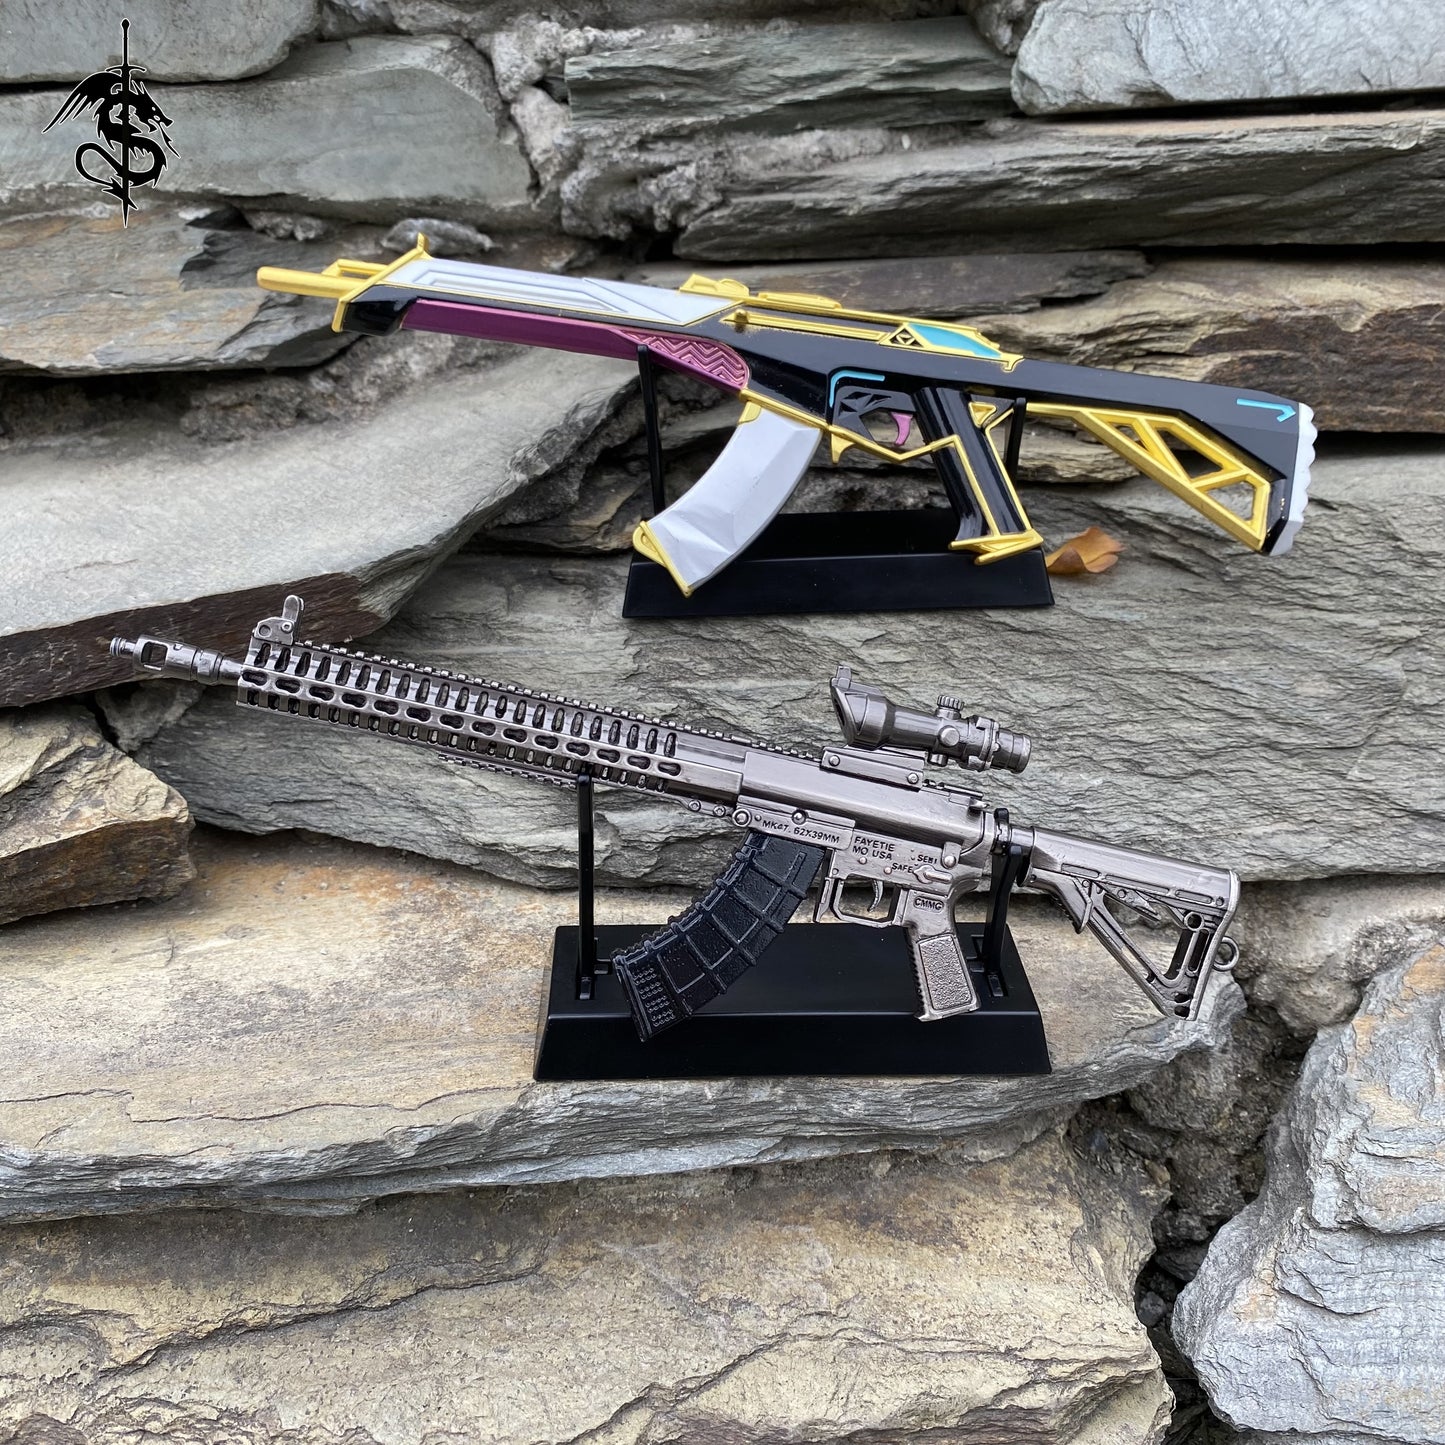 Sword Miniature Display Metal Holder Tiny Gun Stand